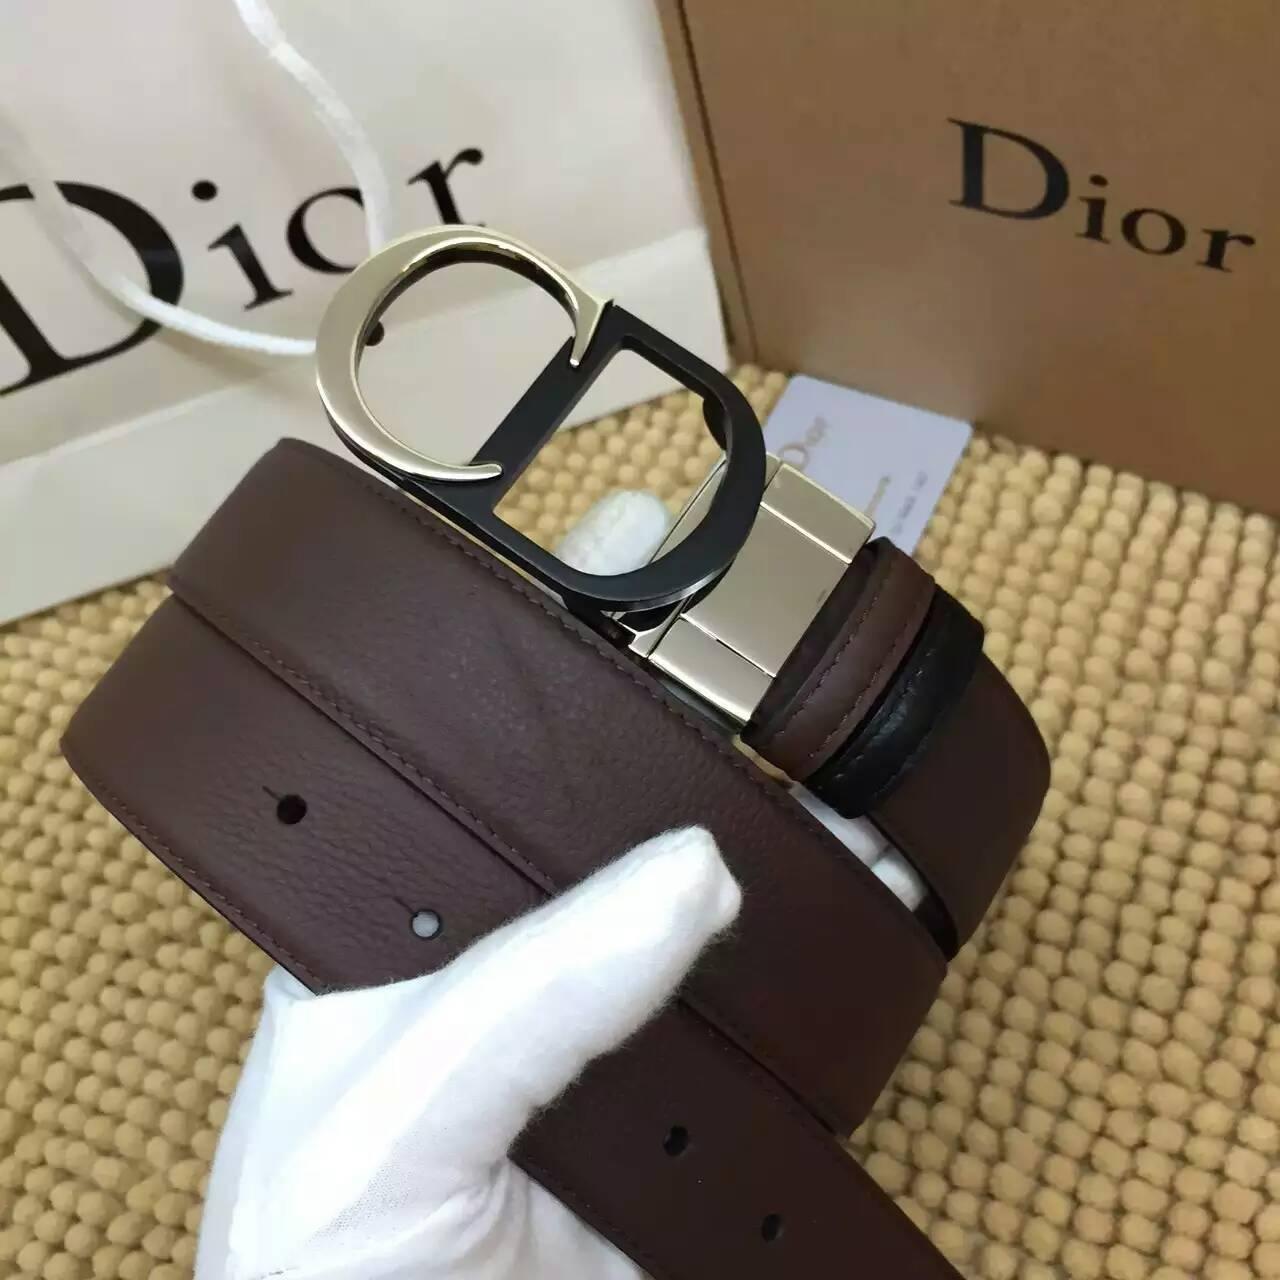 ディオールコピー ベルト Christian Dior 2016春夏新作 高品質 メンズ ベルト diorbelt160320-8